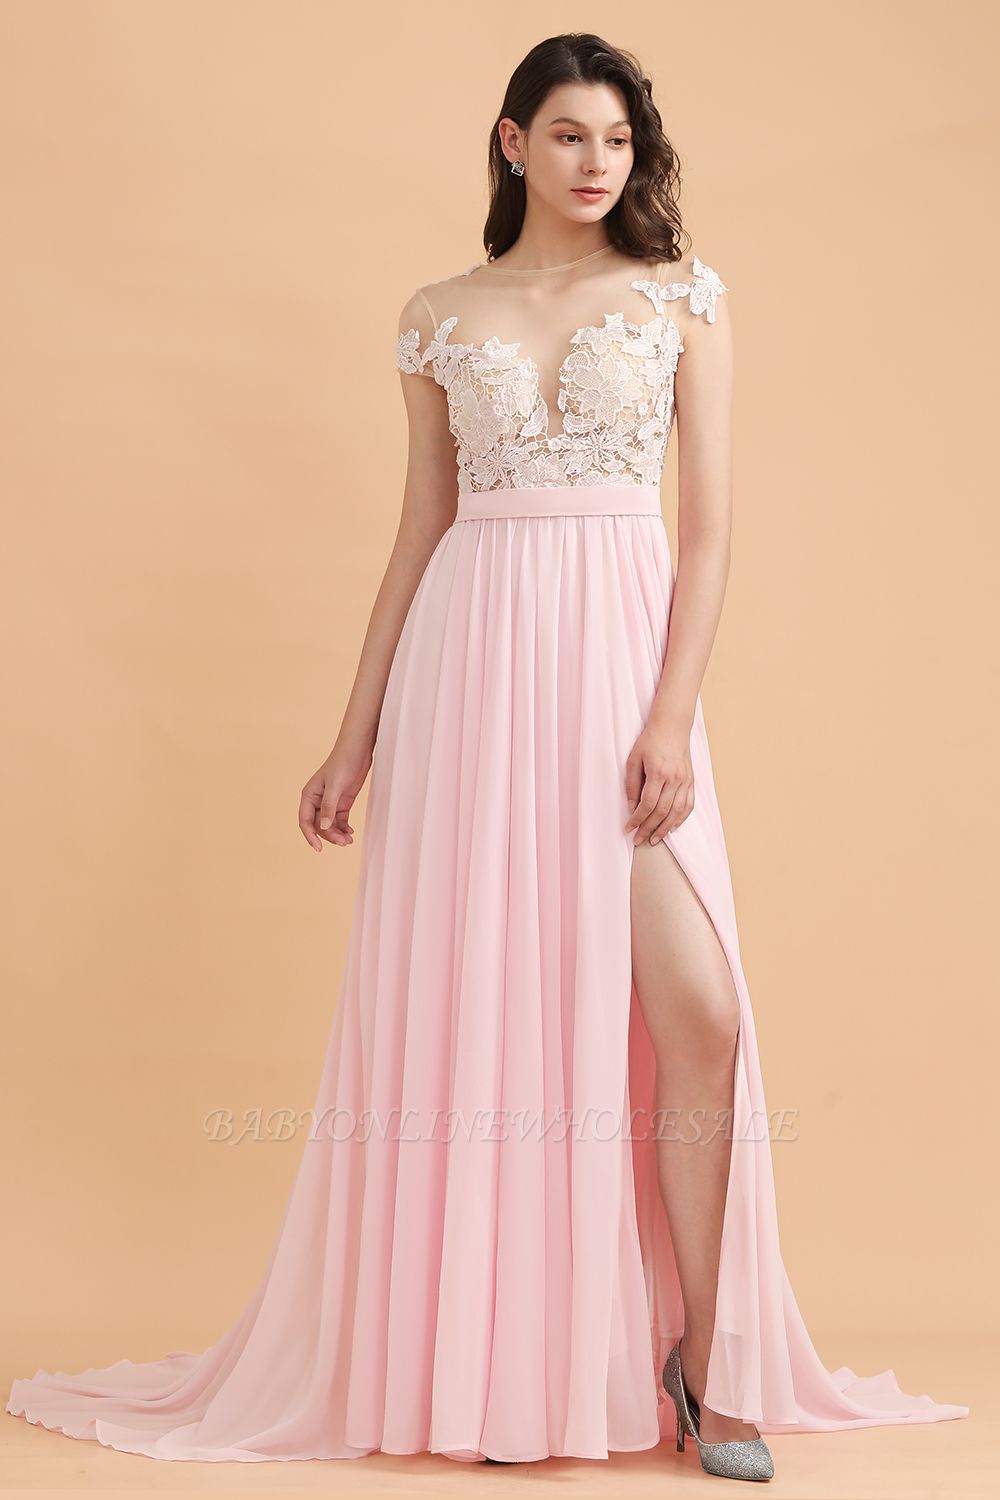 Flügelärmeln Spitzenapplikationen Brautjungfernkleid Rosa Chiffon Aline Hochzeitsfestkleid mit Seitenschlitz